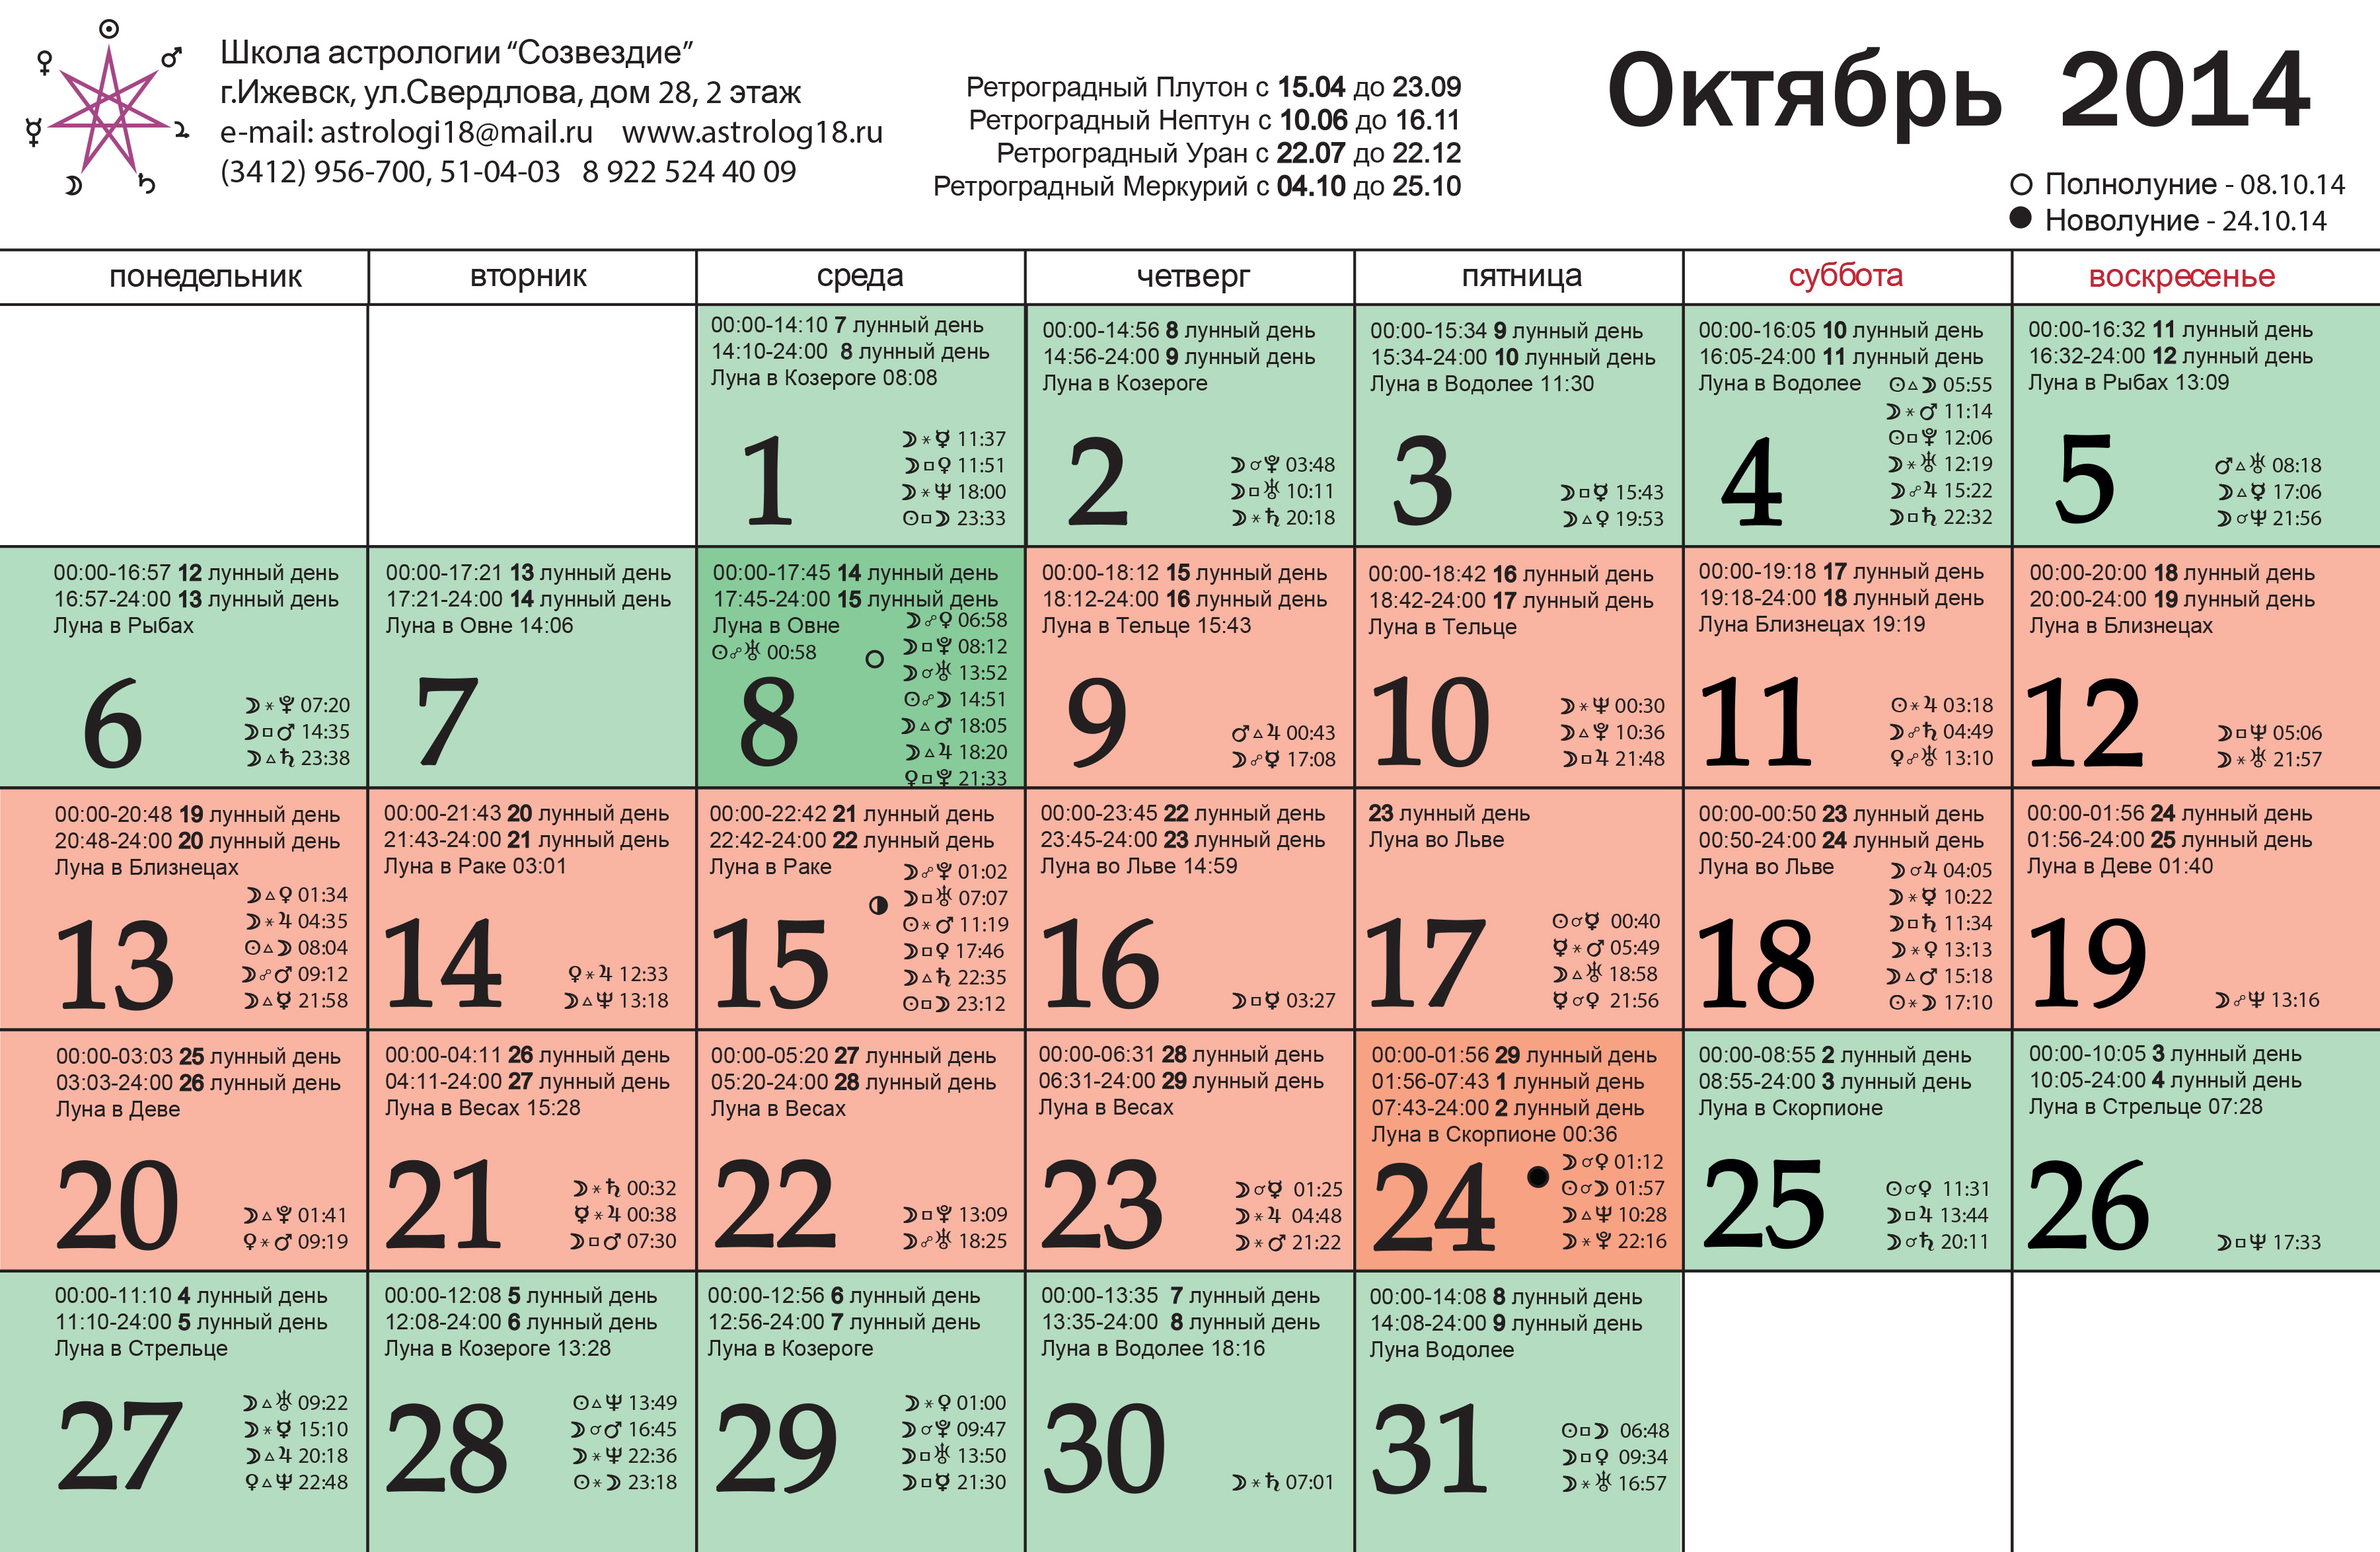 9 апреля лунный календарь. Лунный календарь. Календарь годов по лунному календарю. Октябрь 2014 года календарь.